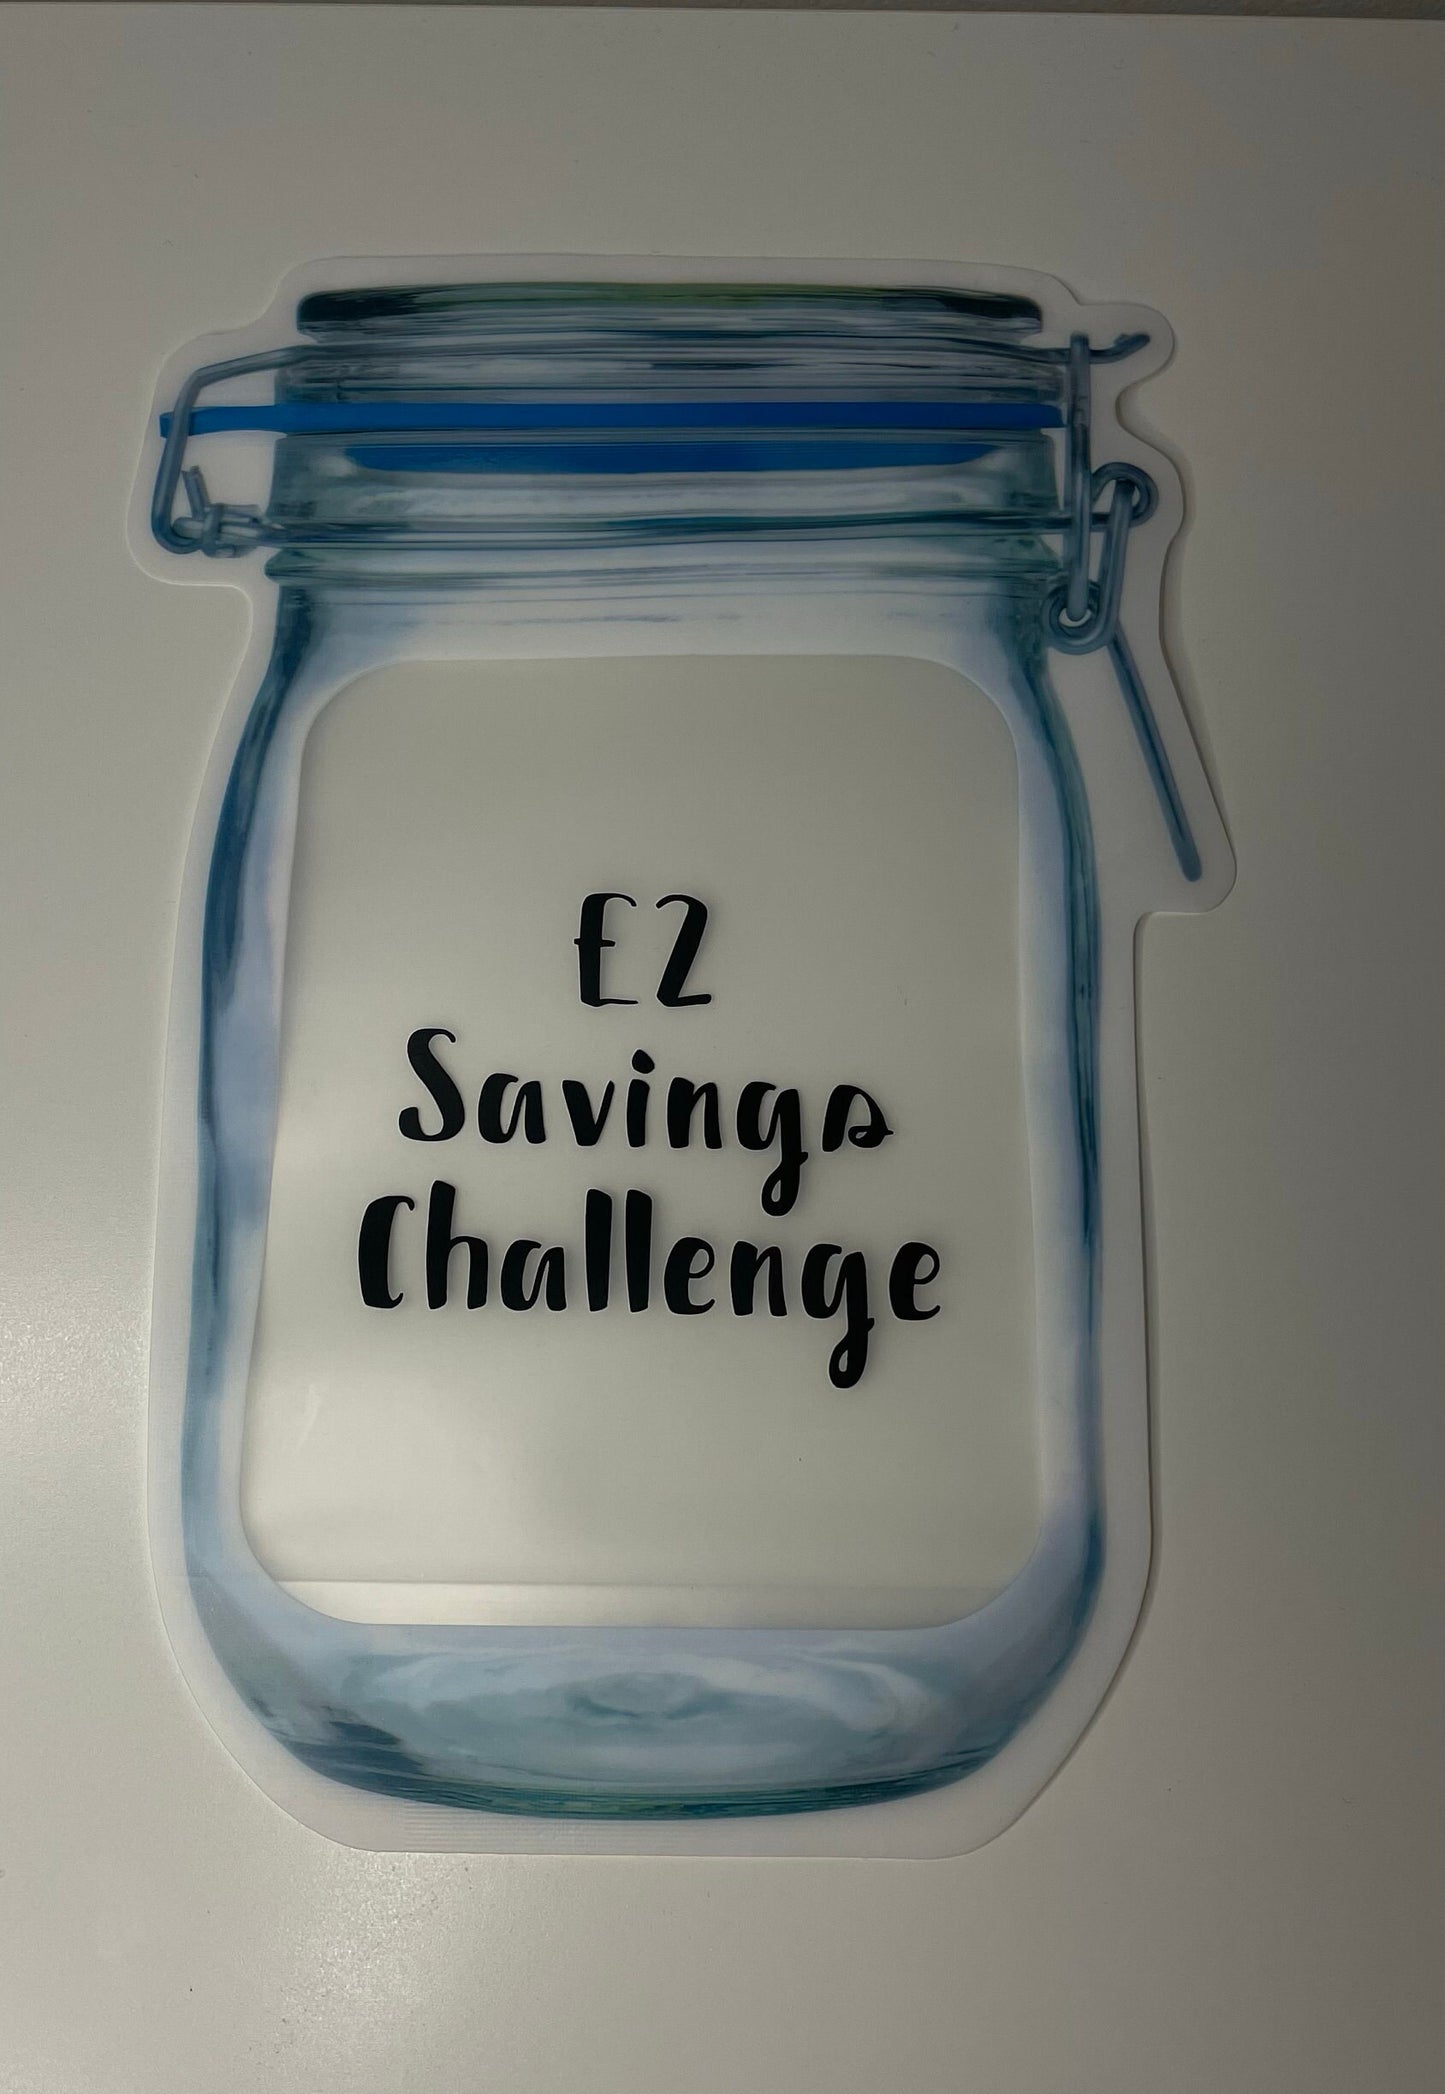 £2 Savings Challenge Jar